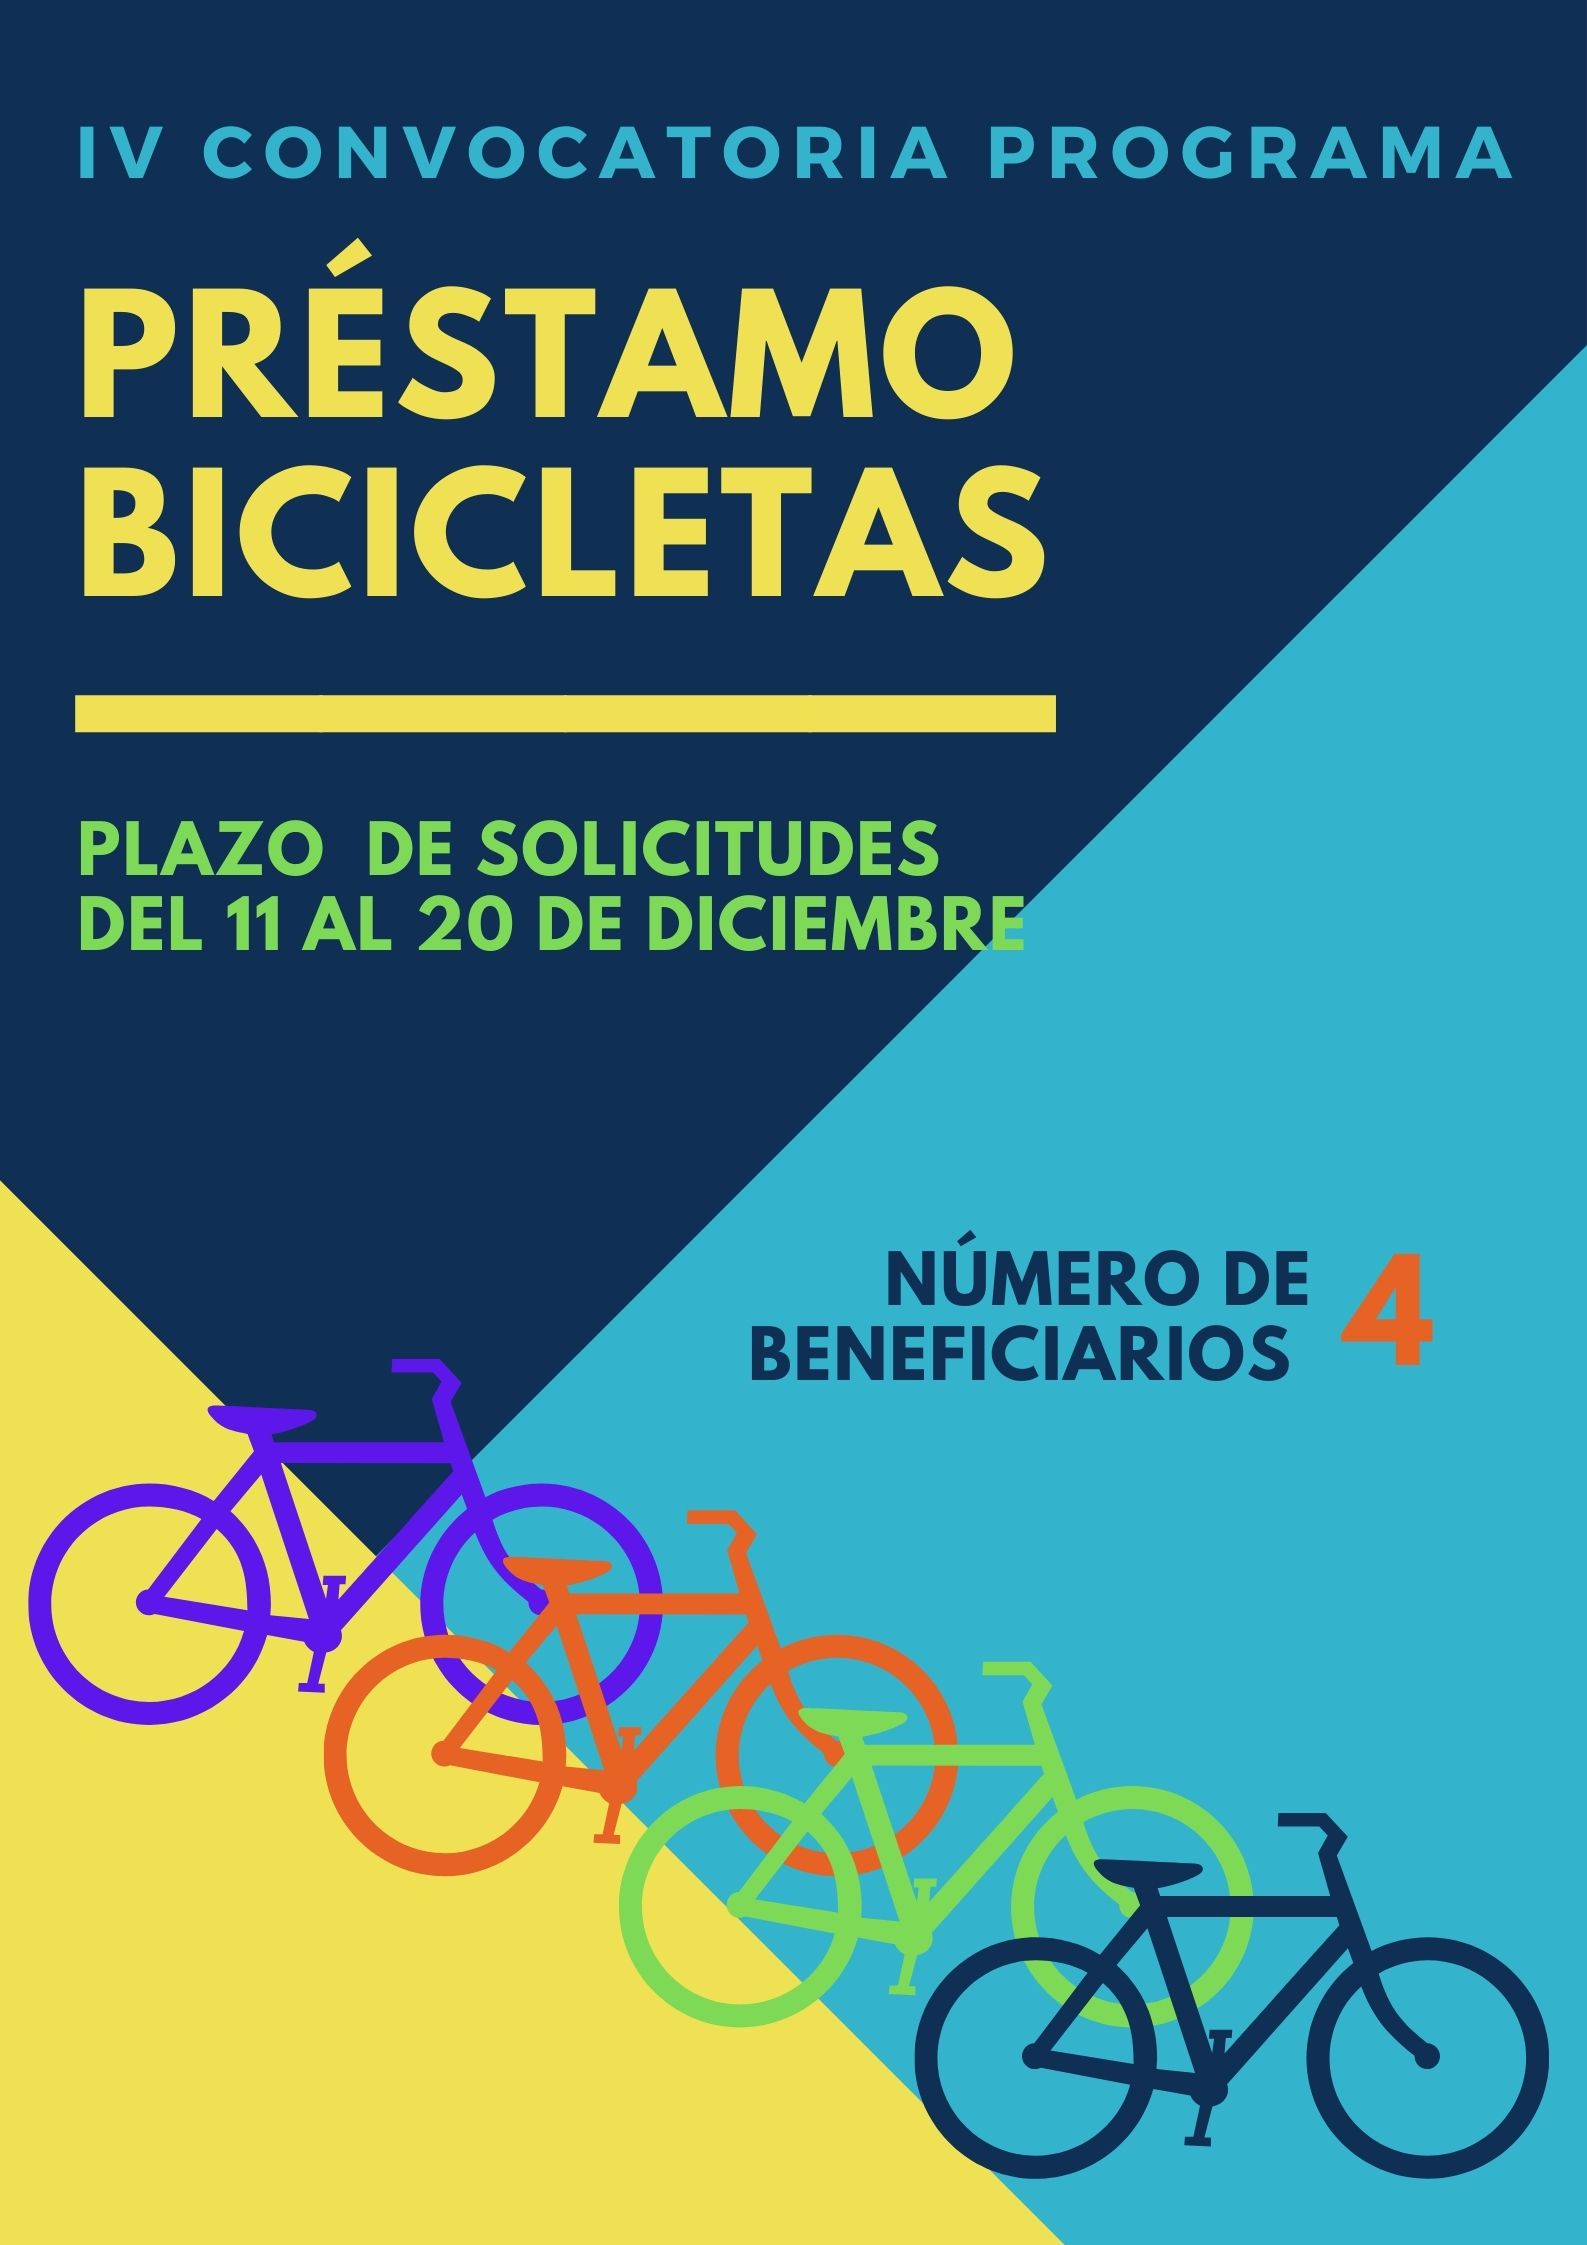 Cartel azul y amarillo donde aparece "IV Convocatoria Programa Préstamo bicicletas plazo de solicitudes del 11 al 20 de diciembre número de beneficiarios 4" con letras de colores y unos dibujos de bicicleta de colores